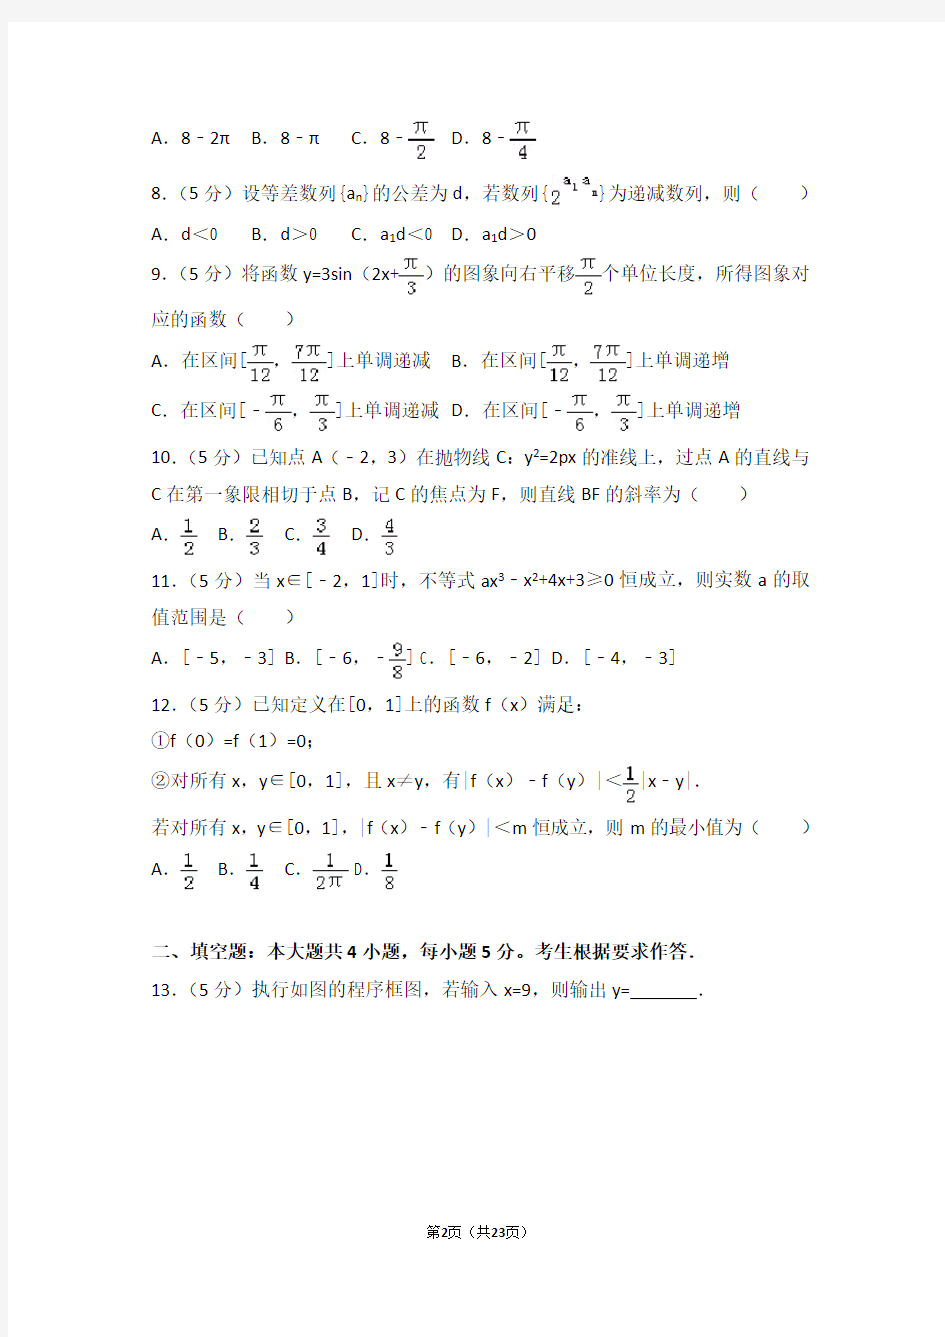 2014年辽宁省高考数学试卷(理科)